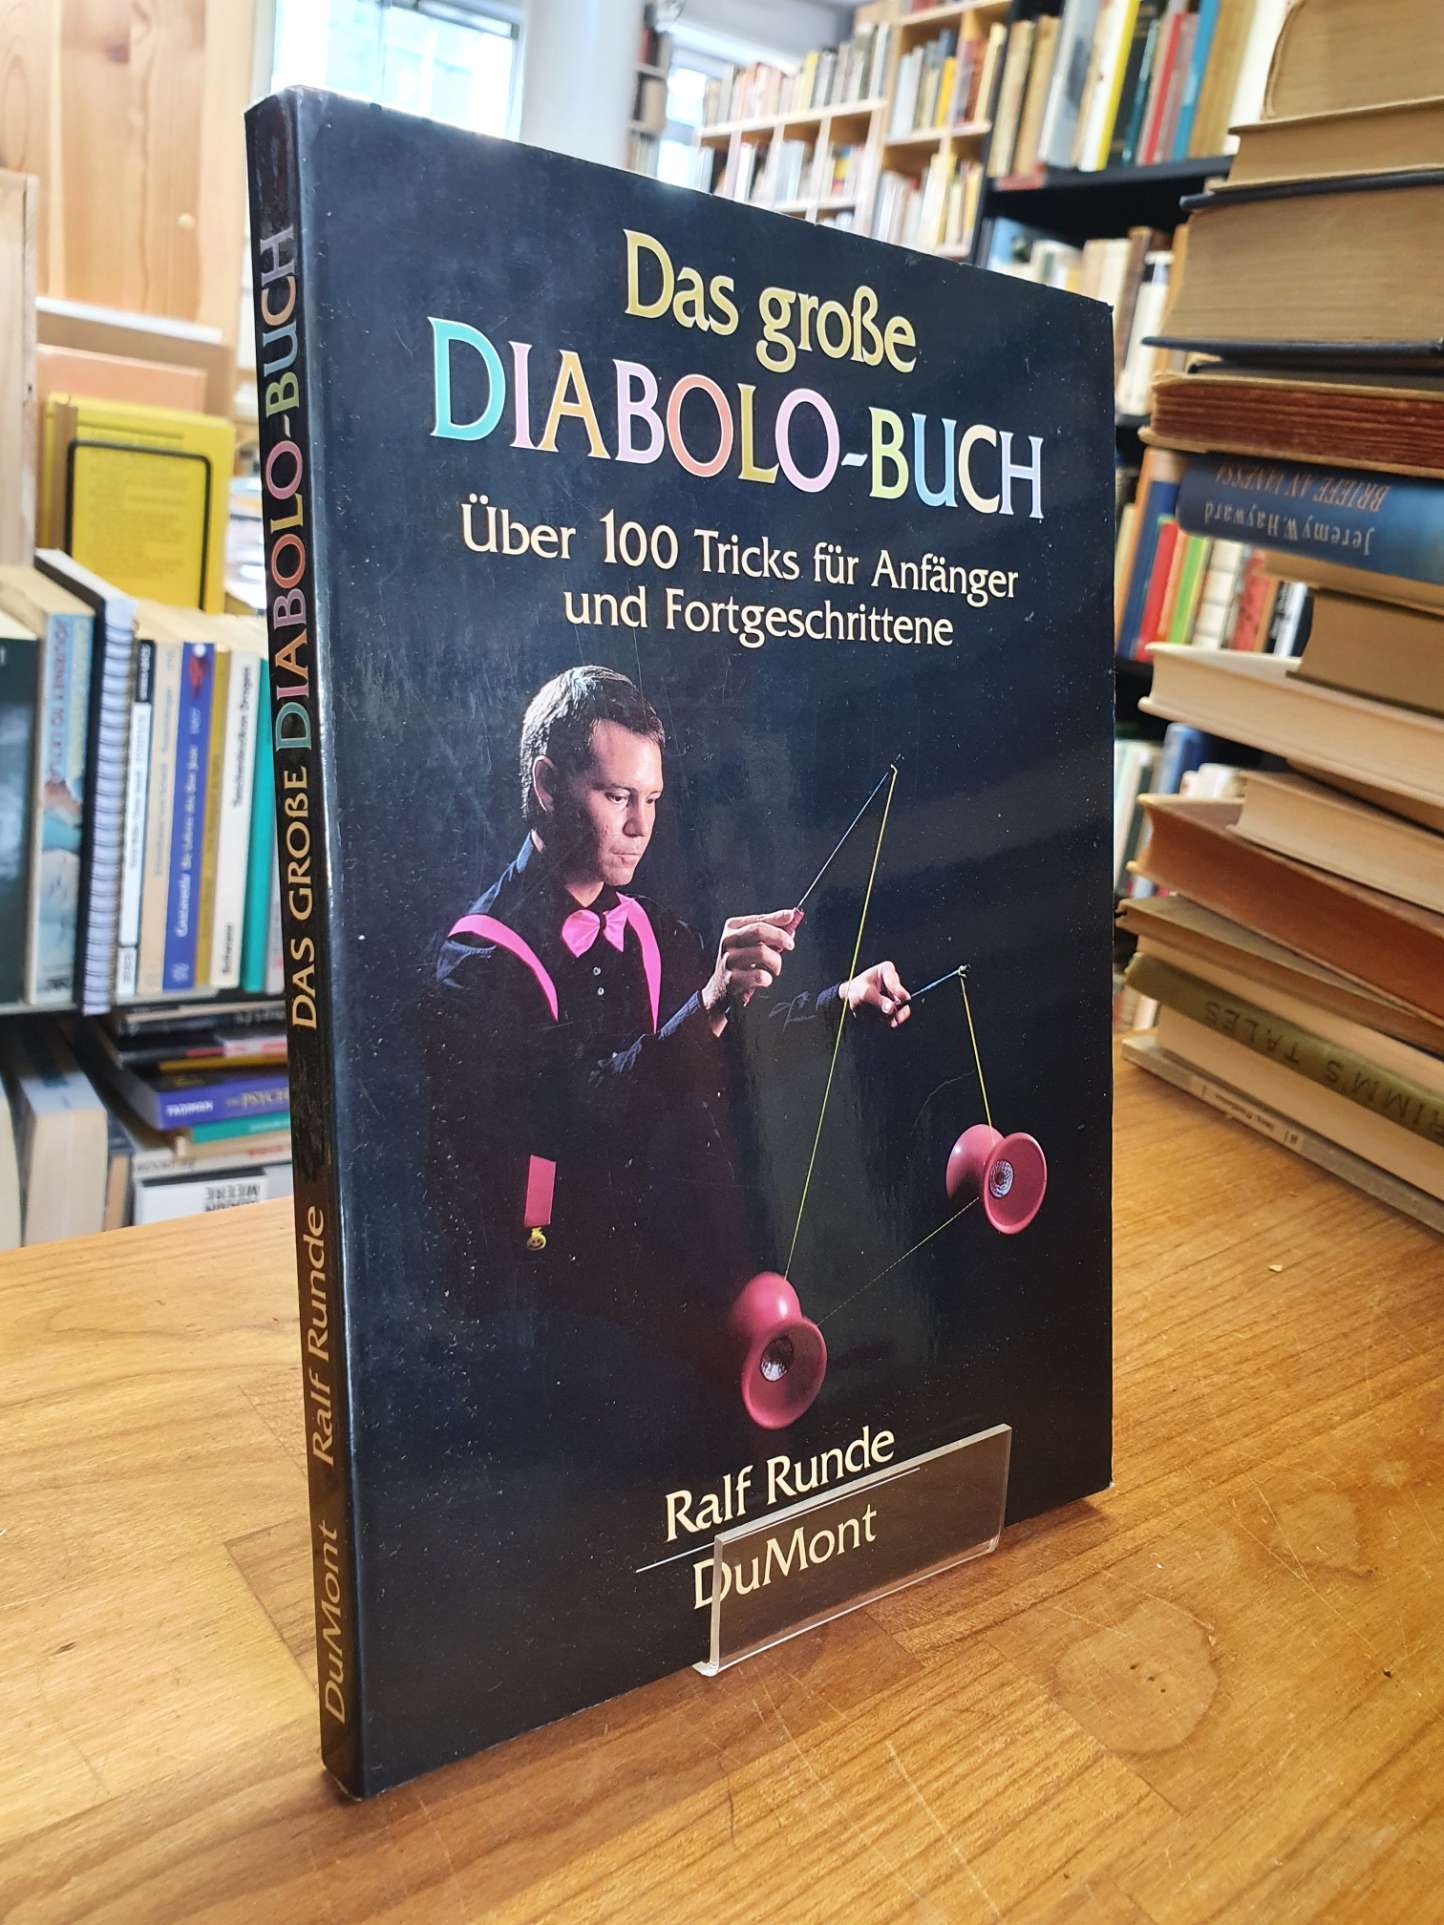 Runde, Das grosse Diabolo-Buch – Über 100 Tricks für Anfänger und Fortgeschritte